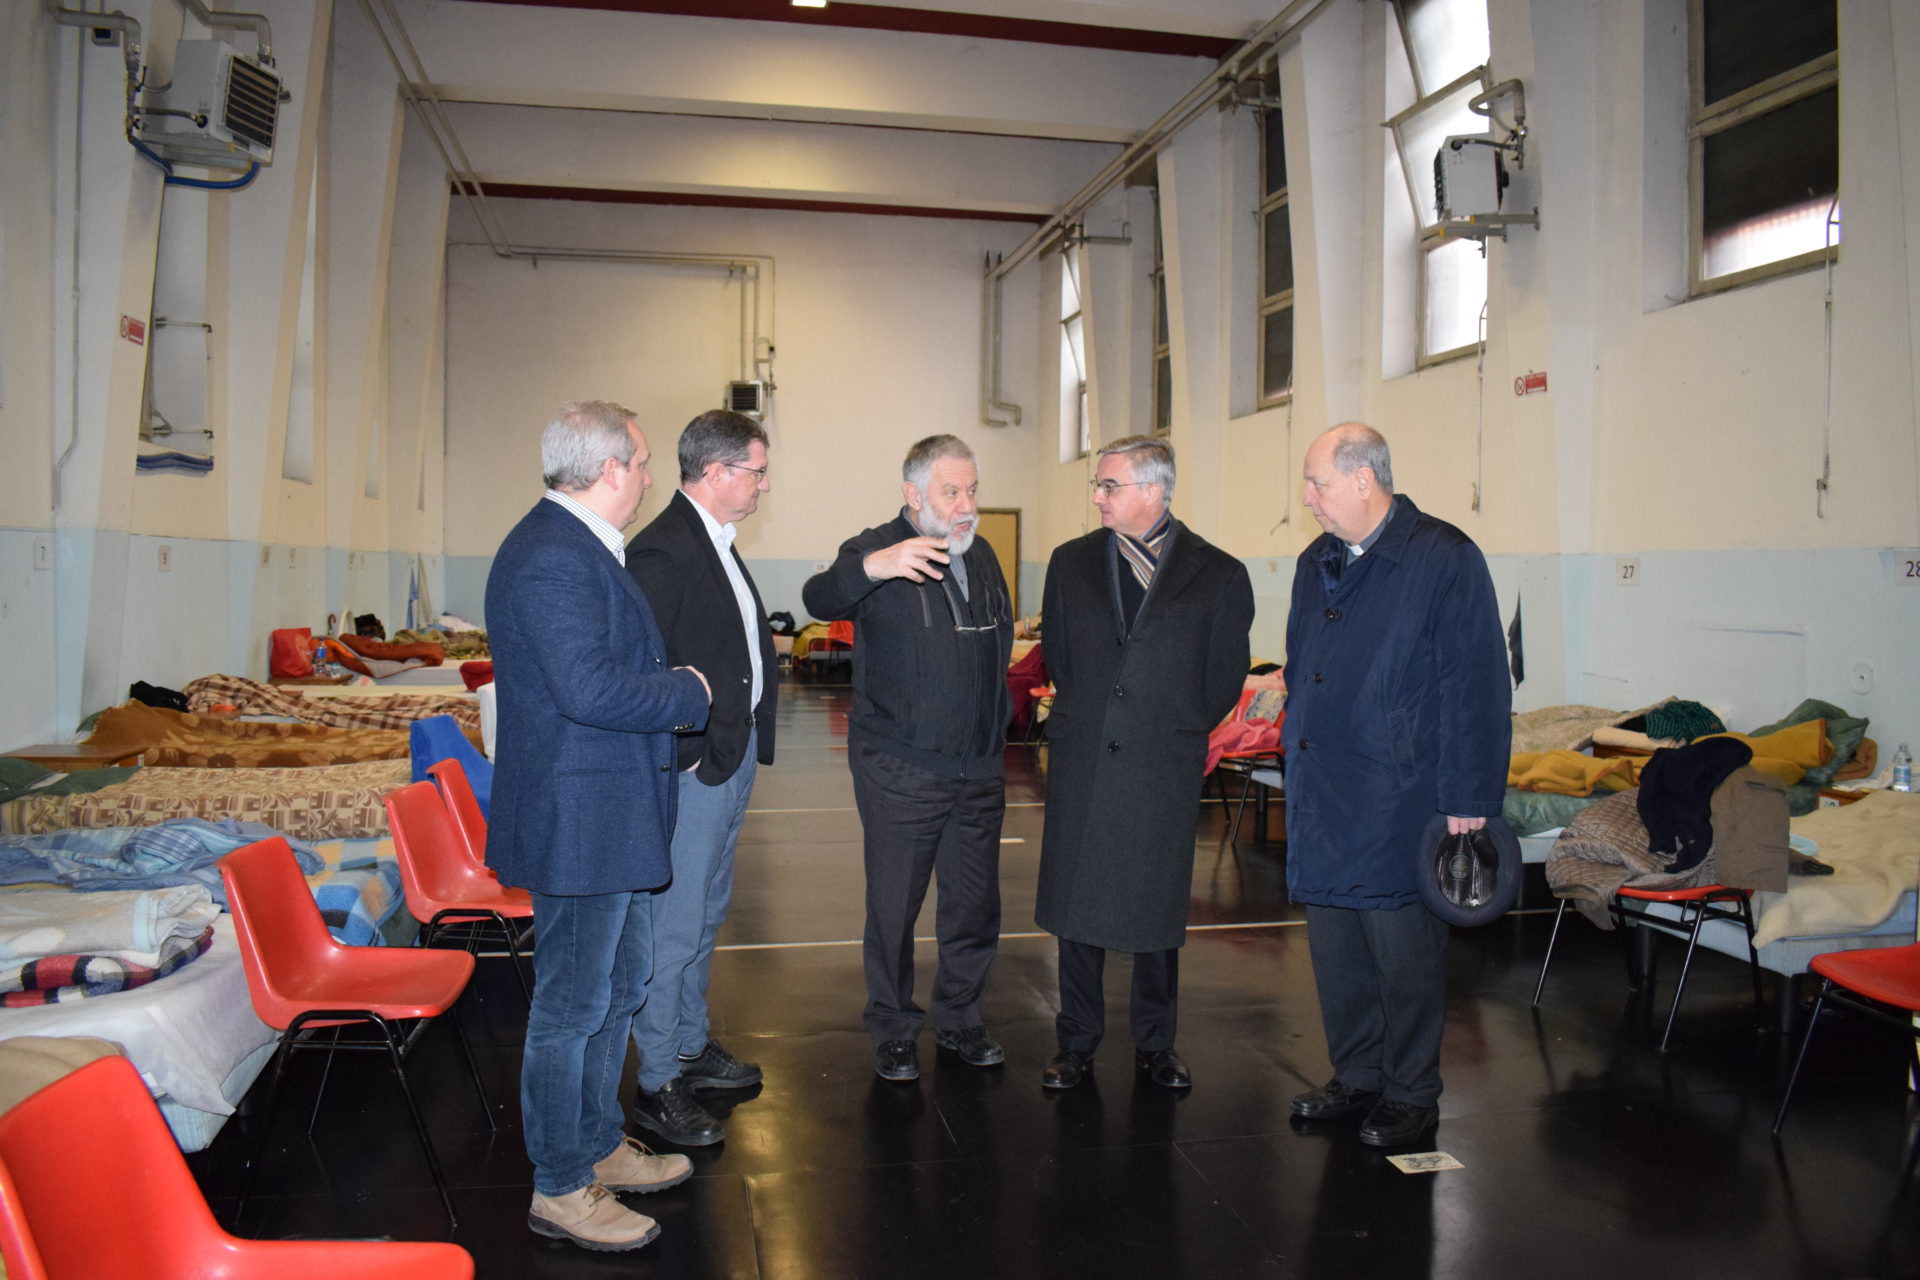 L'incontro tra diocesi di Lugano e diocesi di Como nel febbraio 2018.